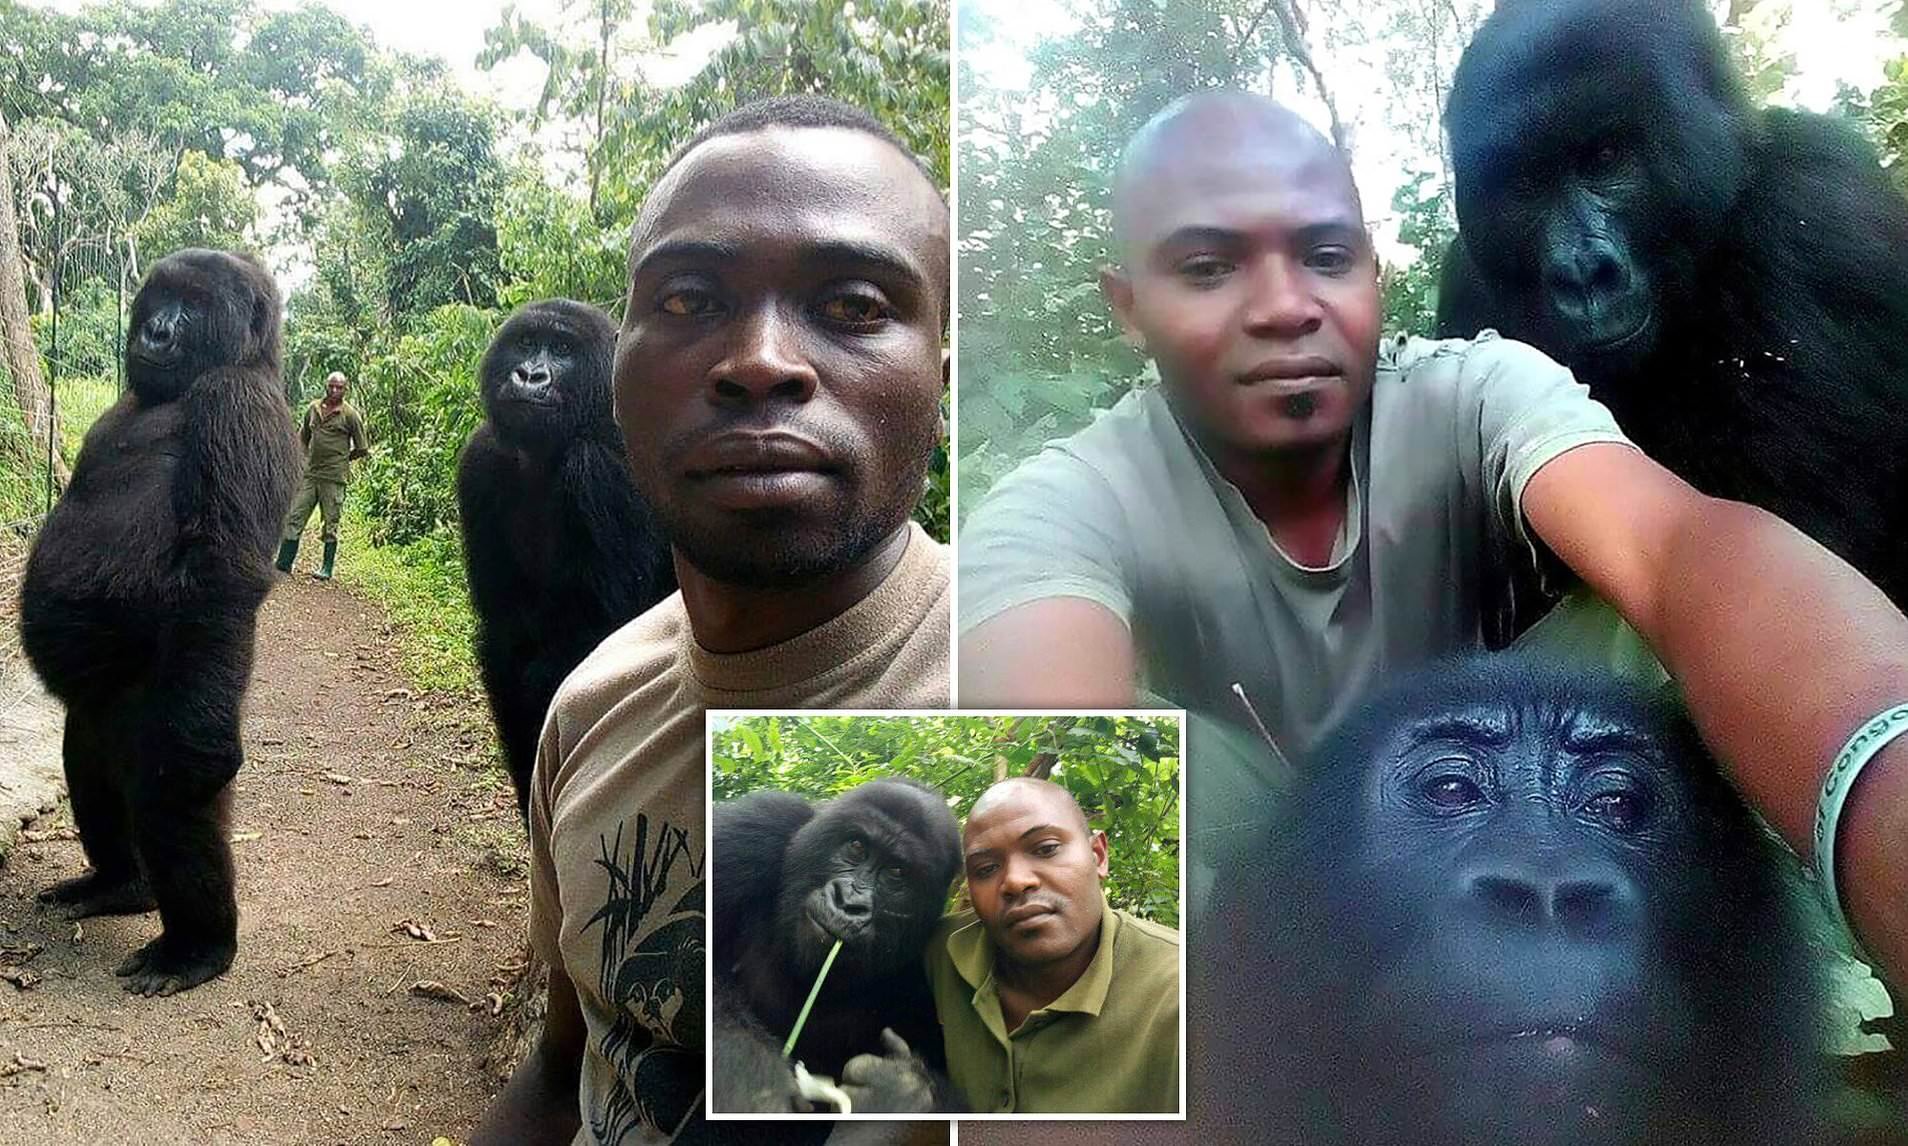 Больше похожего видео. Горилла в Конго Брент Стиртон 2007. Селфи с гориллами в Конго. "Горилла в Конго", Брент Стиртон,. Негр похожий на гориллу.